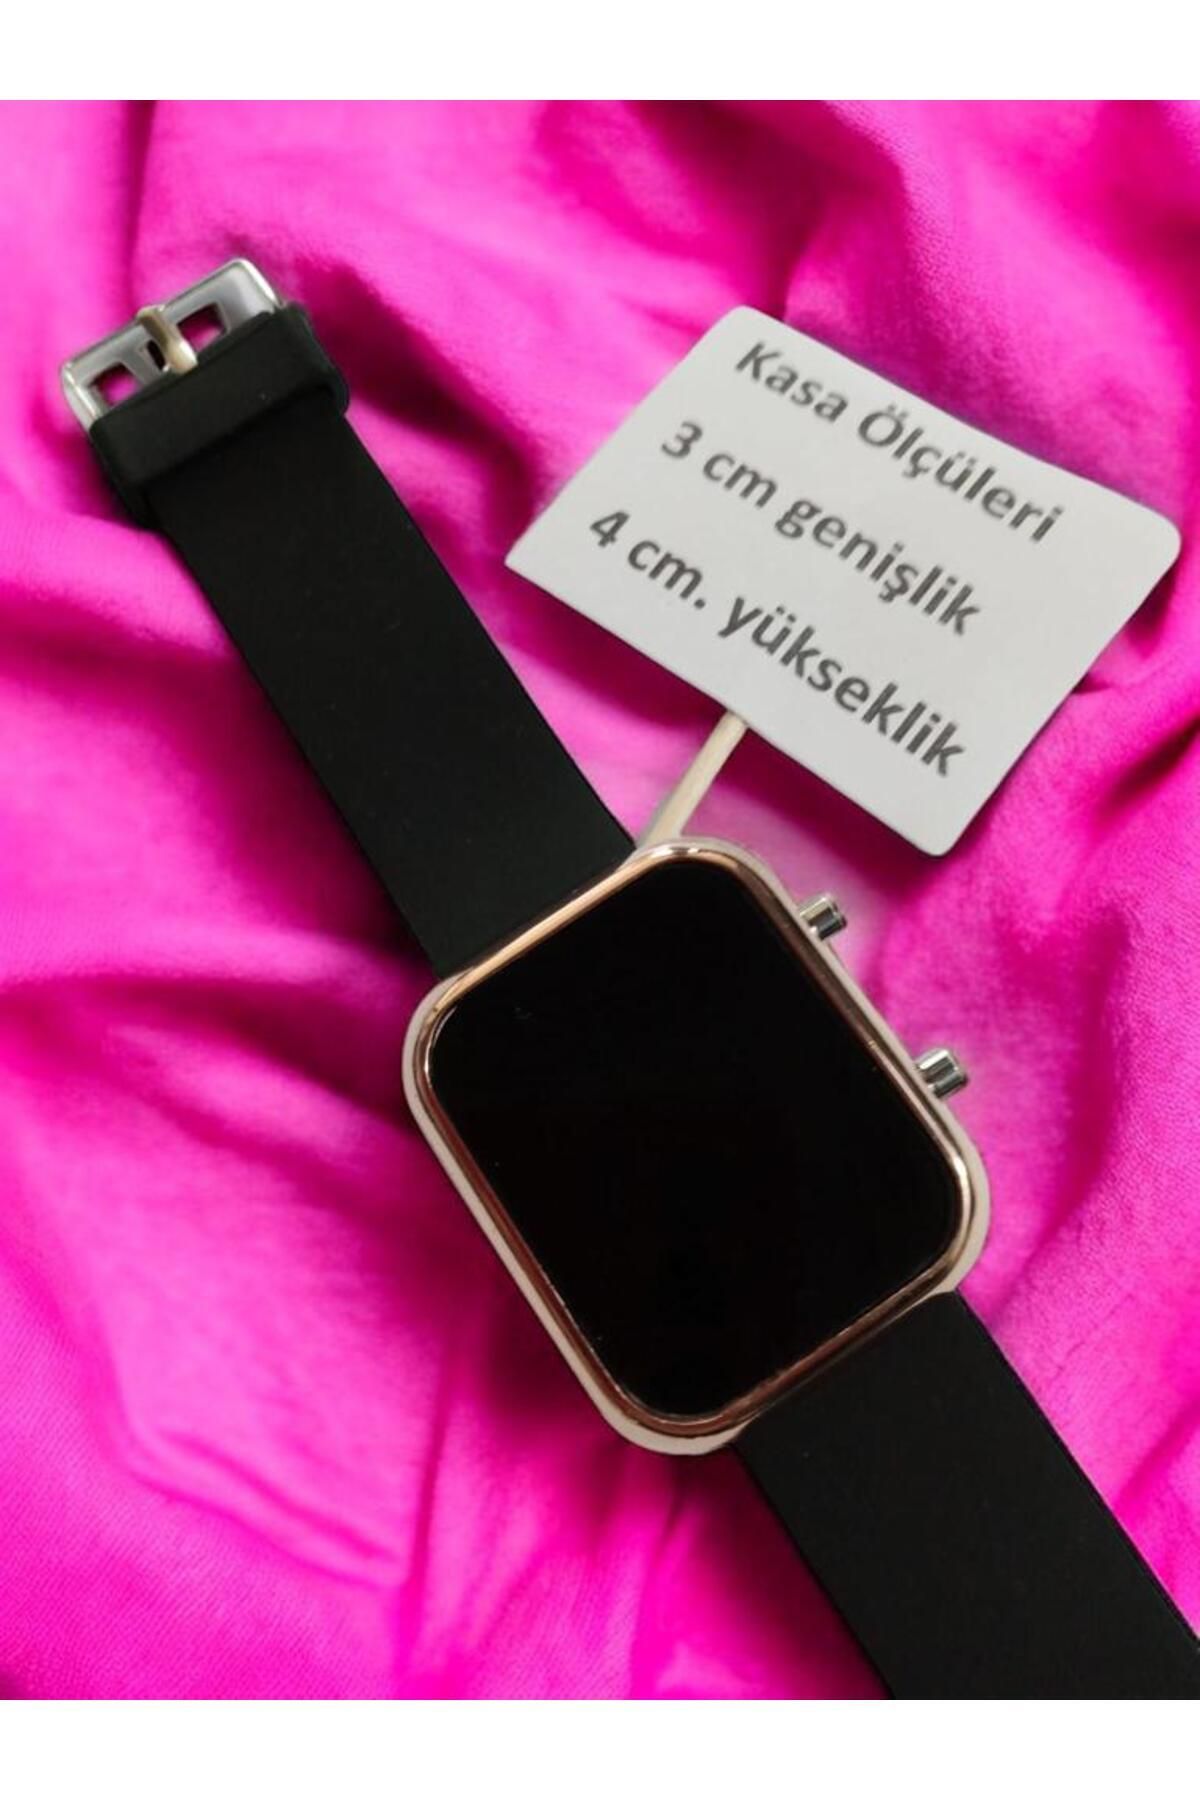 Brality Dijital Led Çocuk Saati Silikon Erkek Ve Kadın Tüm Bileklere Uygun.(siyah kordon) (rose gold kasa)